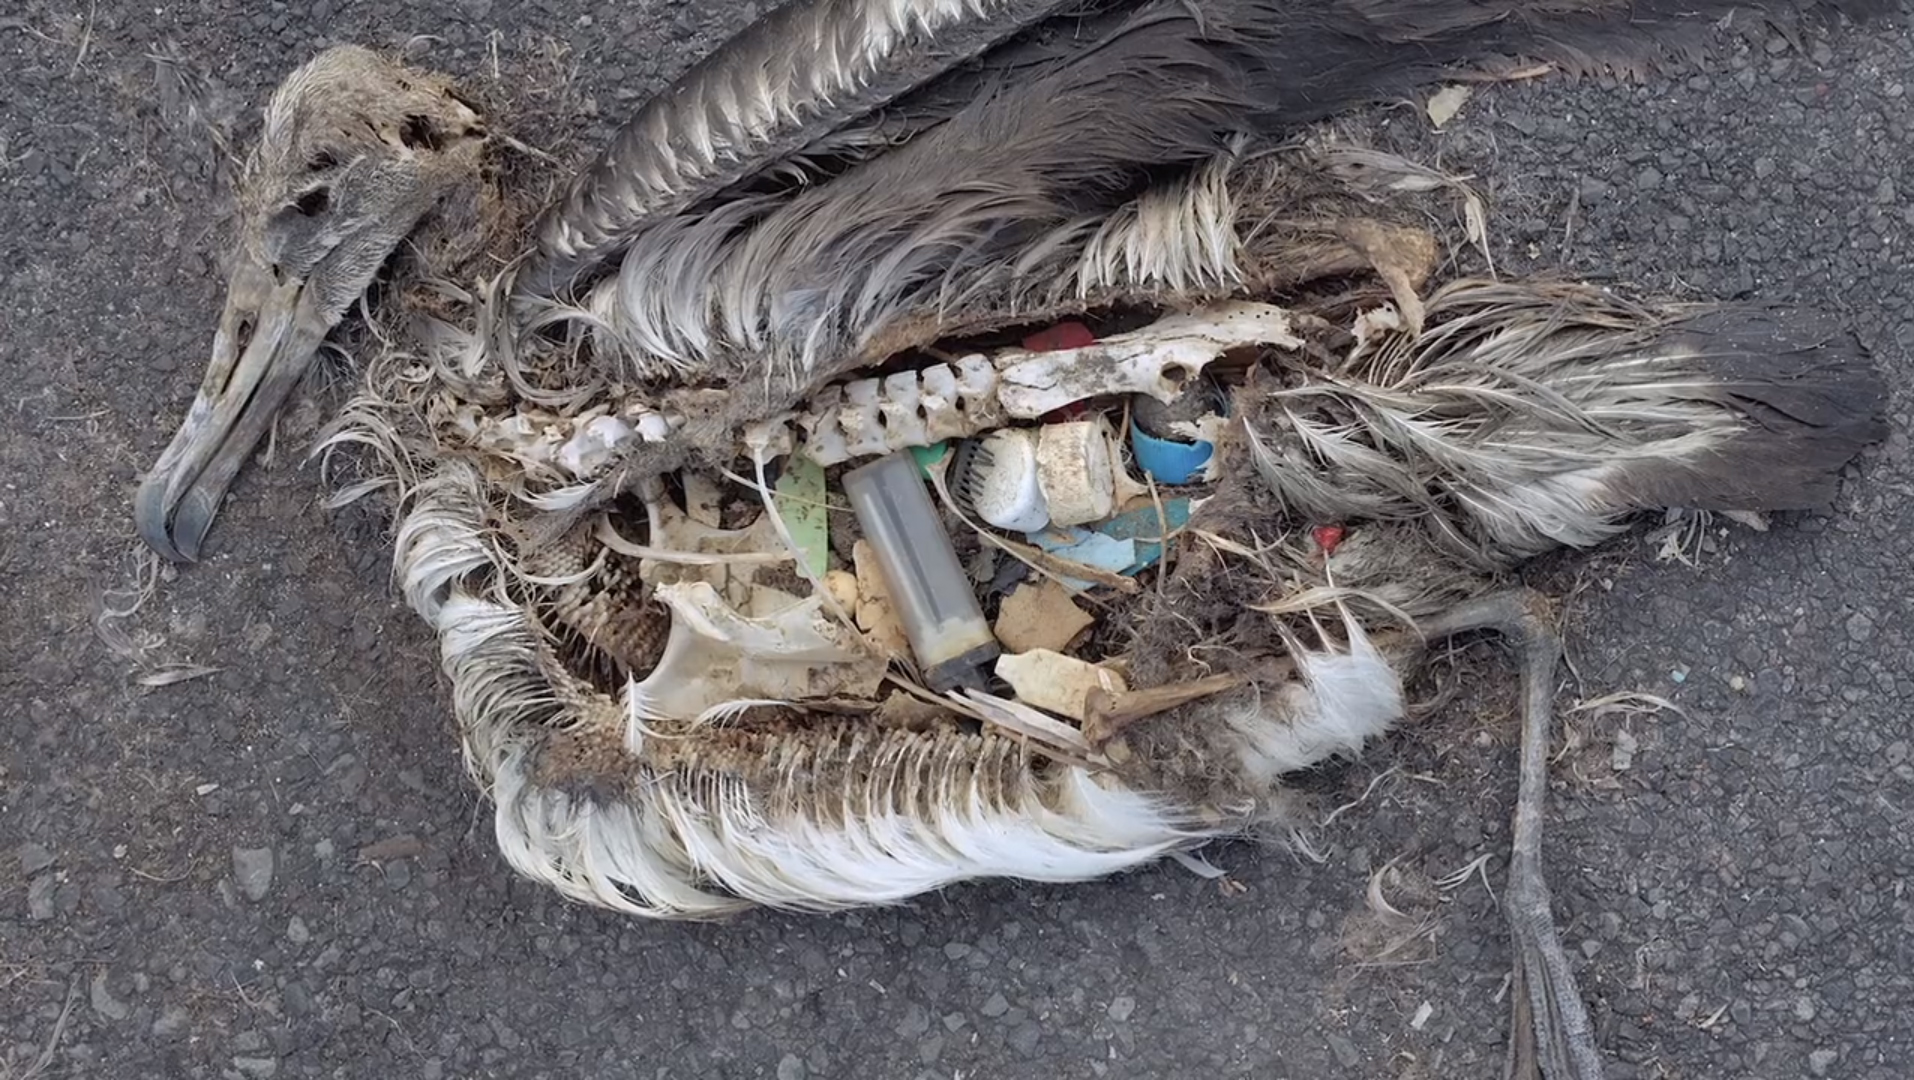 Ezek a műanyagtárgyak pusztítják el a legtöbb delfint, bálnát, teknőst és tengeri madarat